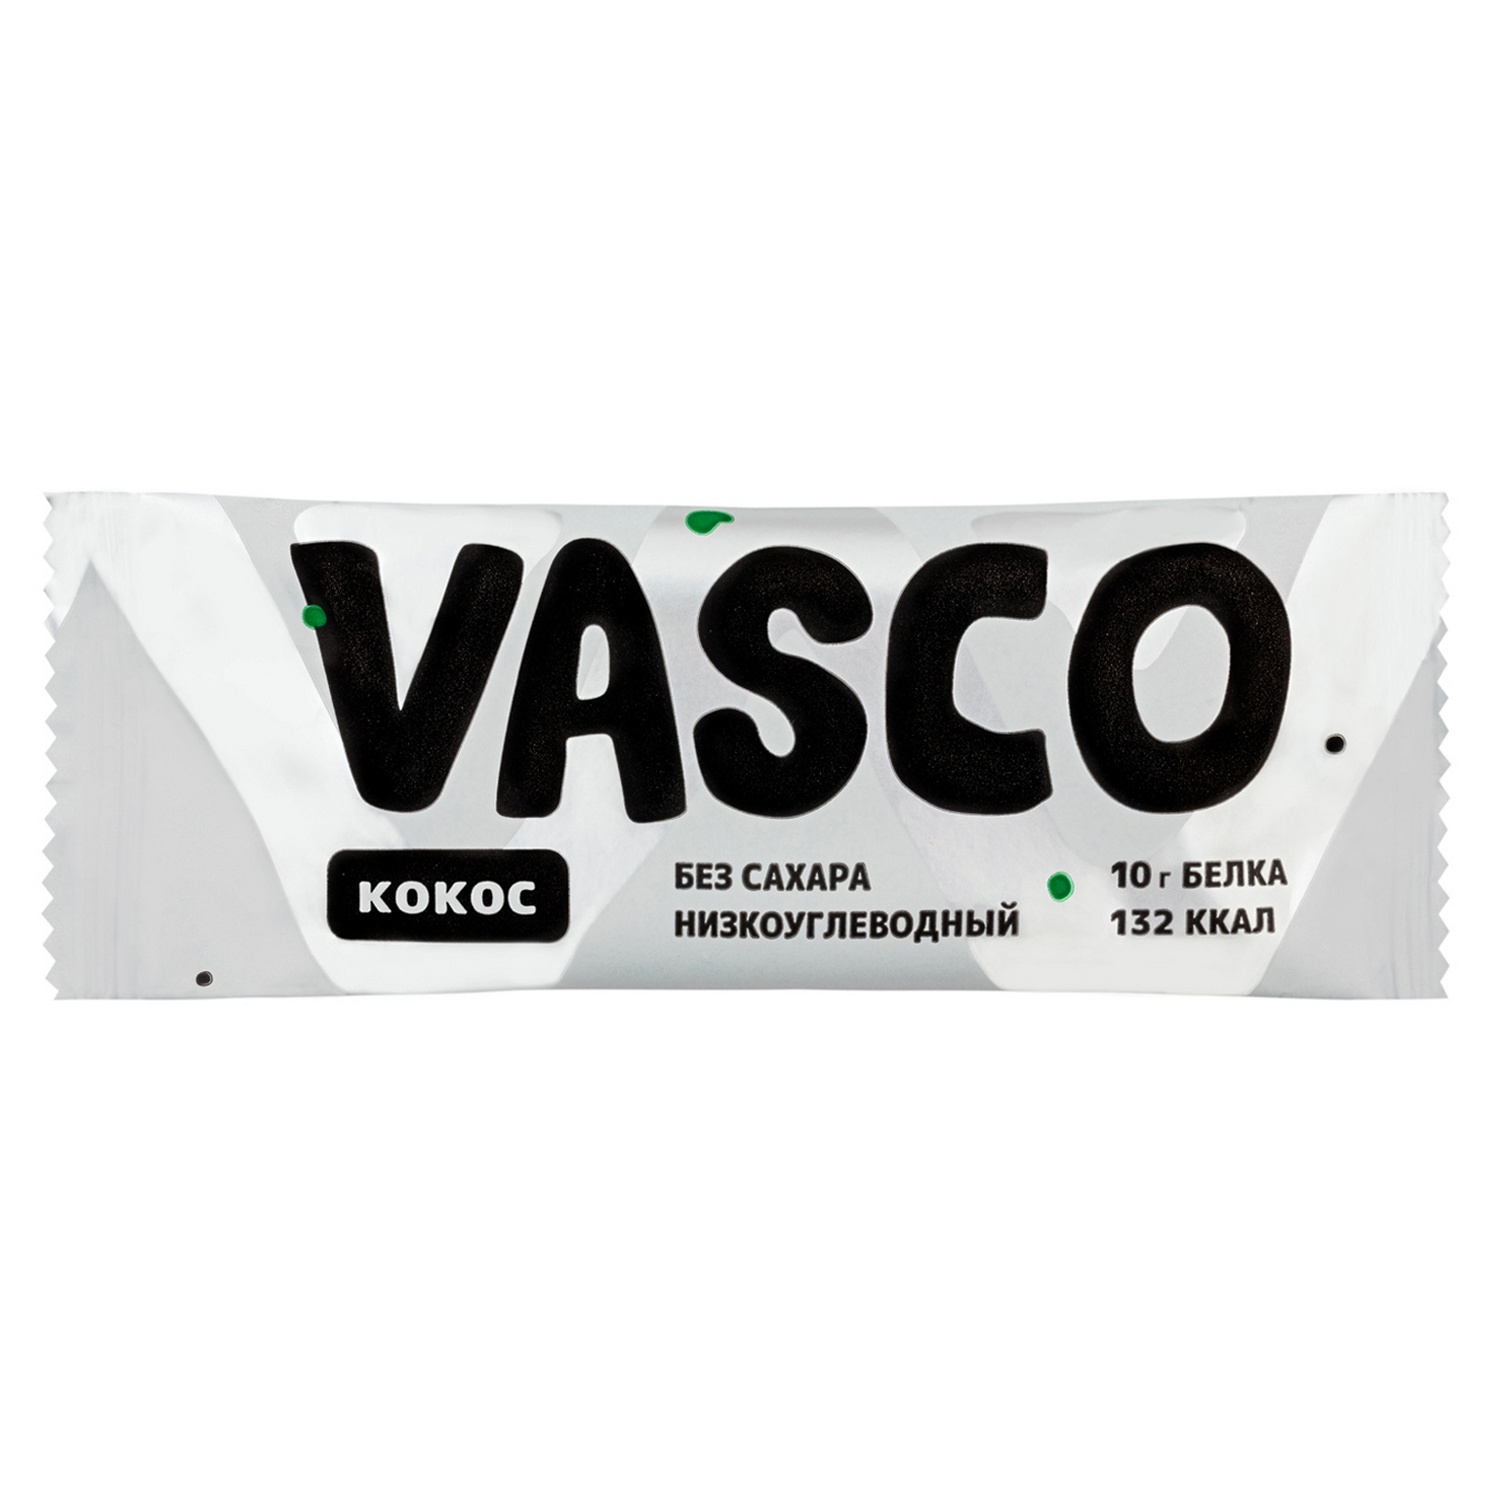 Батончик Vasco низкоуглеводный кокос 40г - фото 1